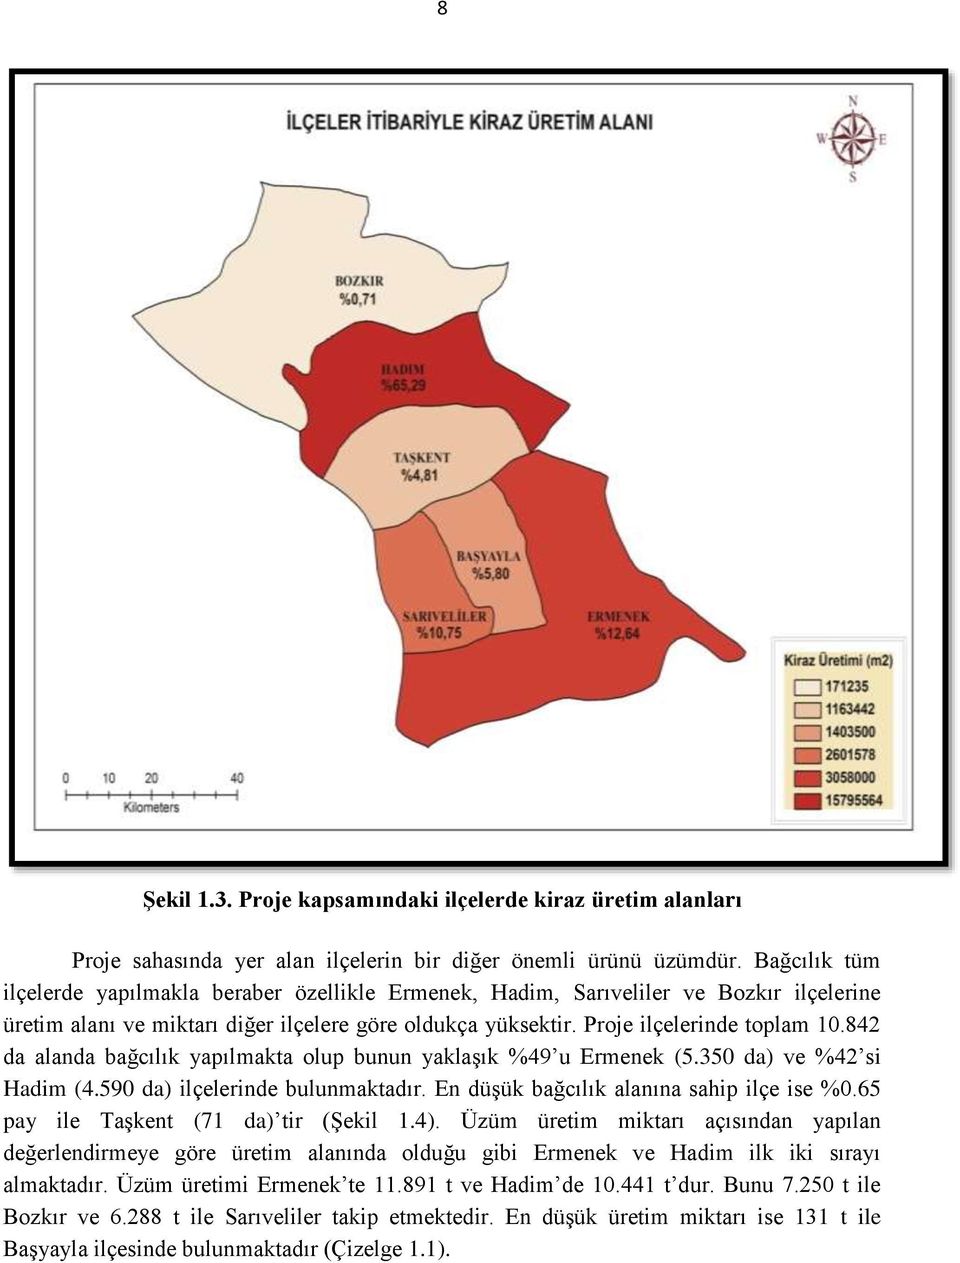 842 da alanda bağcılık yapılmakta olup bunun yaklaşık %49 u Ermenek (5.350 da) ve %42 si Hadim (4.590 da) ilçelerinde bulunmaktadır. En düşük bağcılık alanına sahip ilçe ise %0.